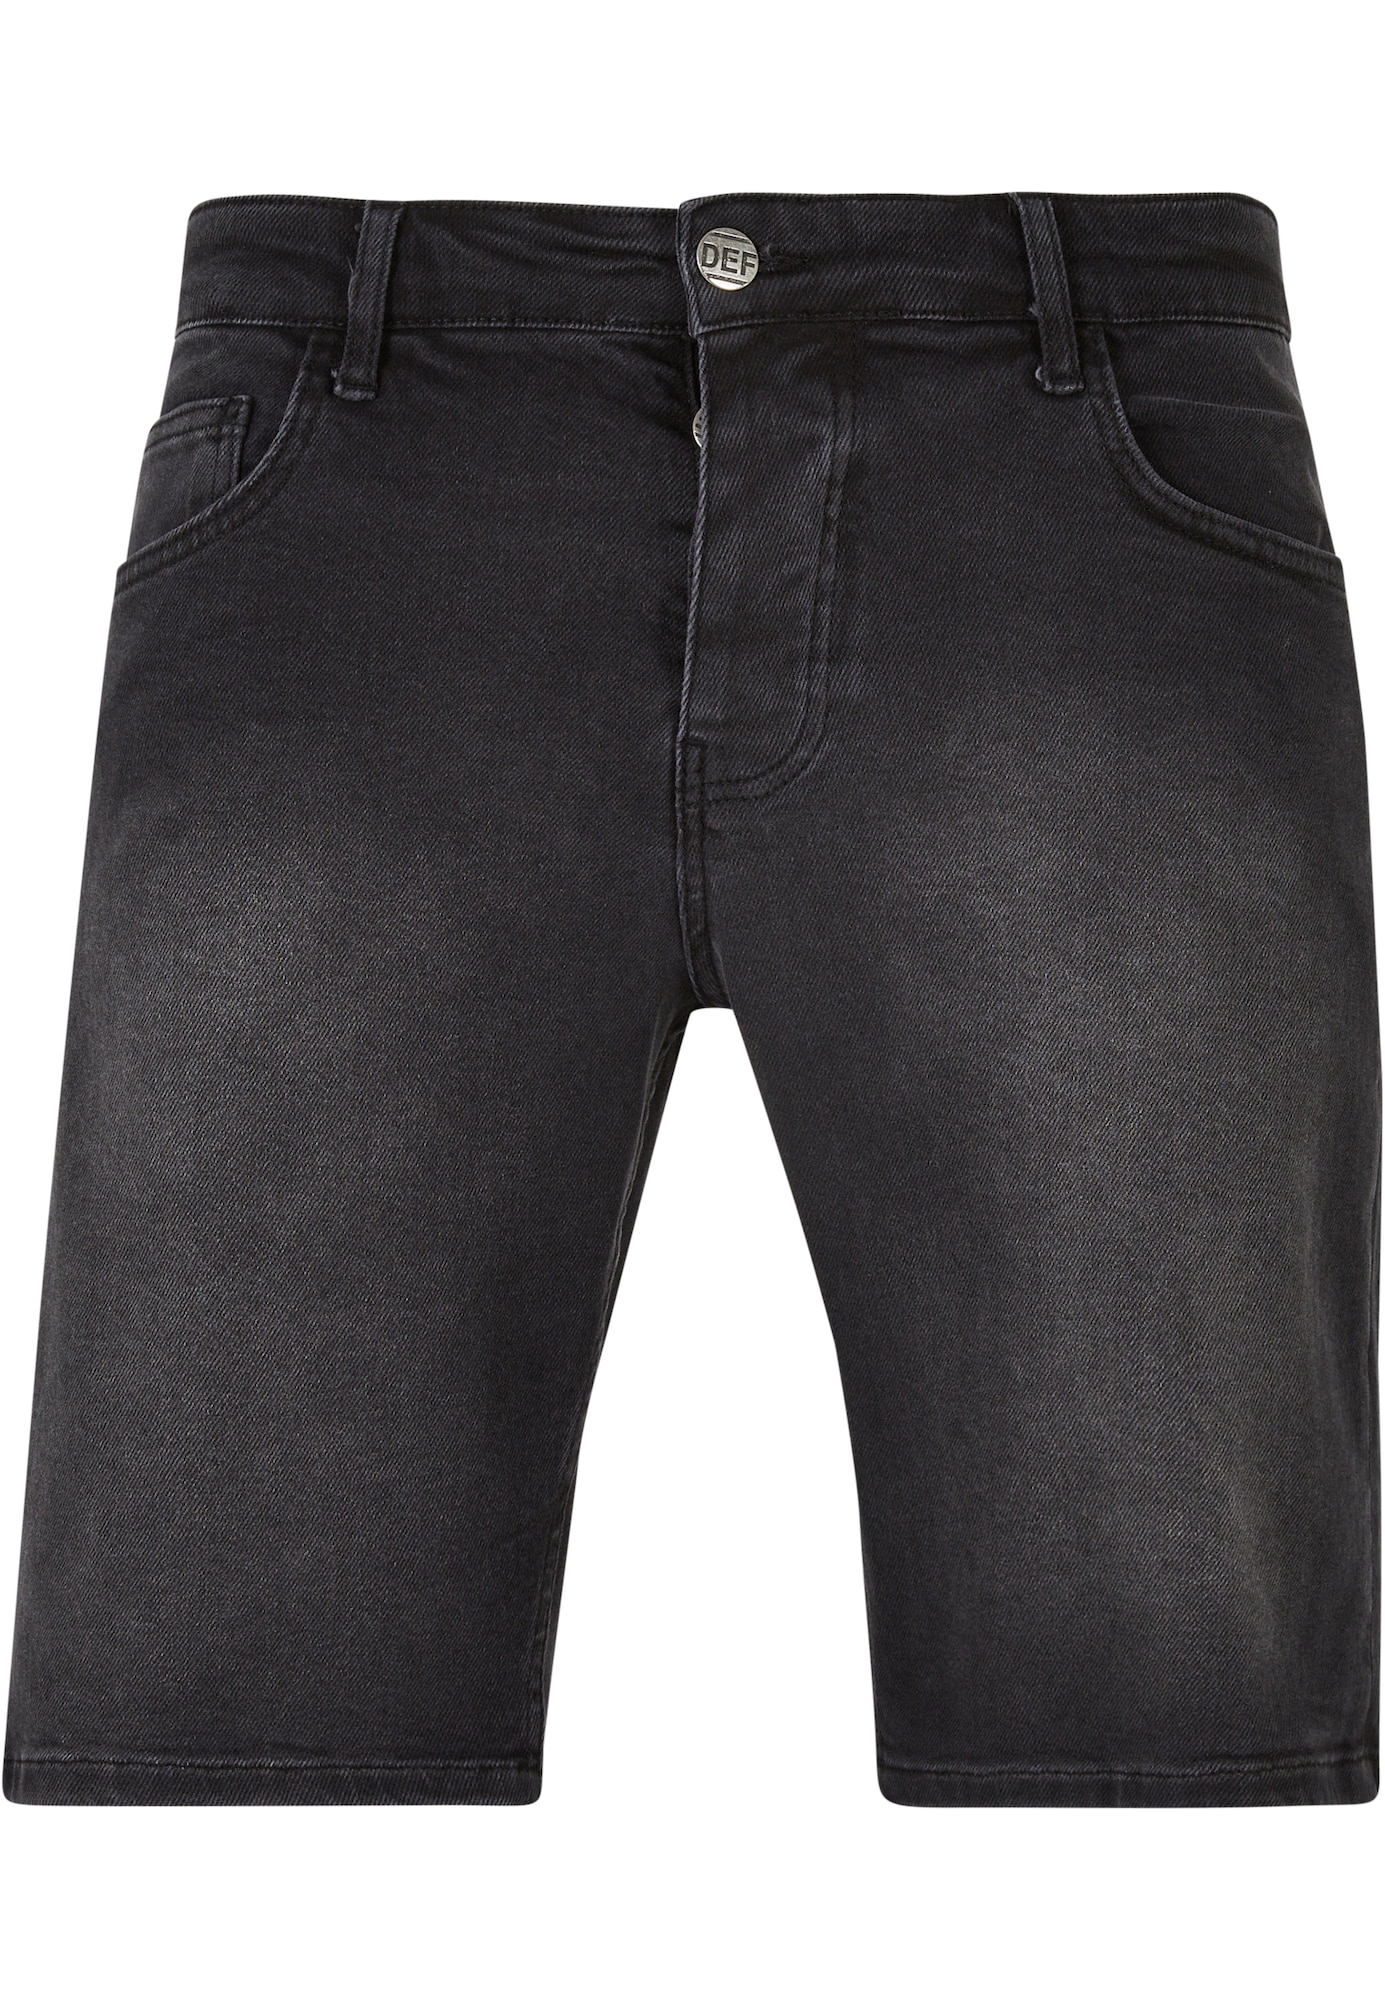 DEF Džinsai 'Georg' juodo džinso spalva